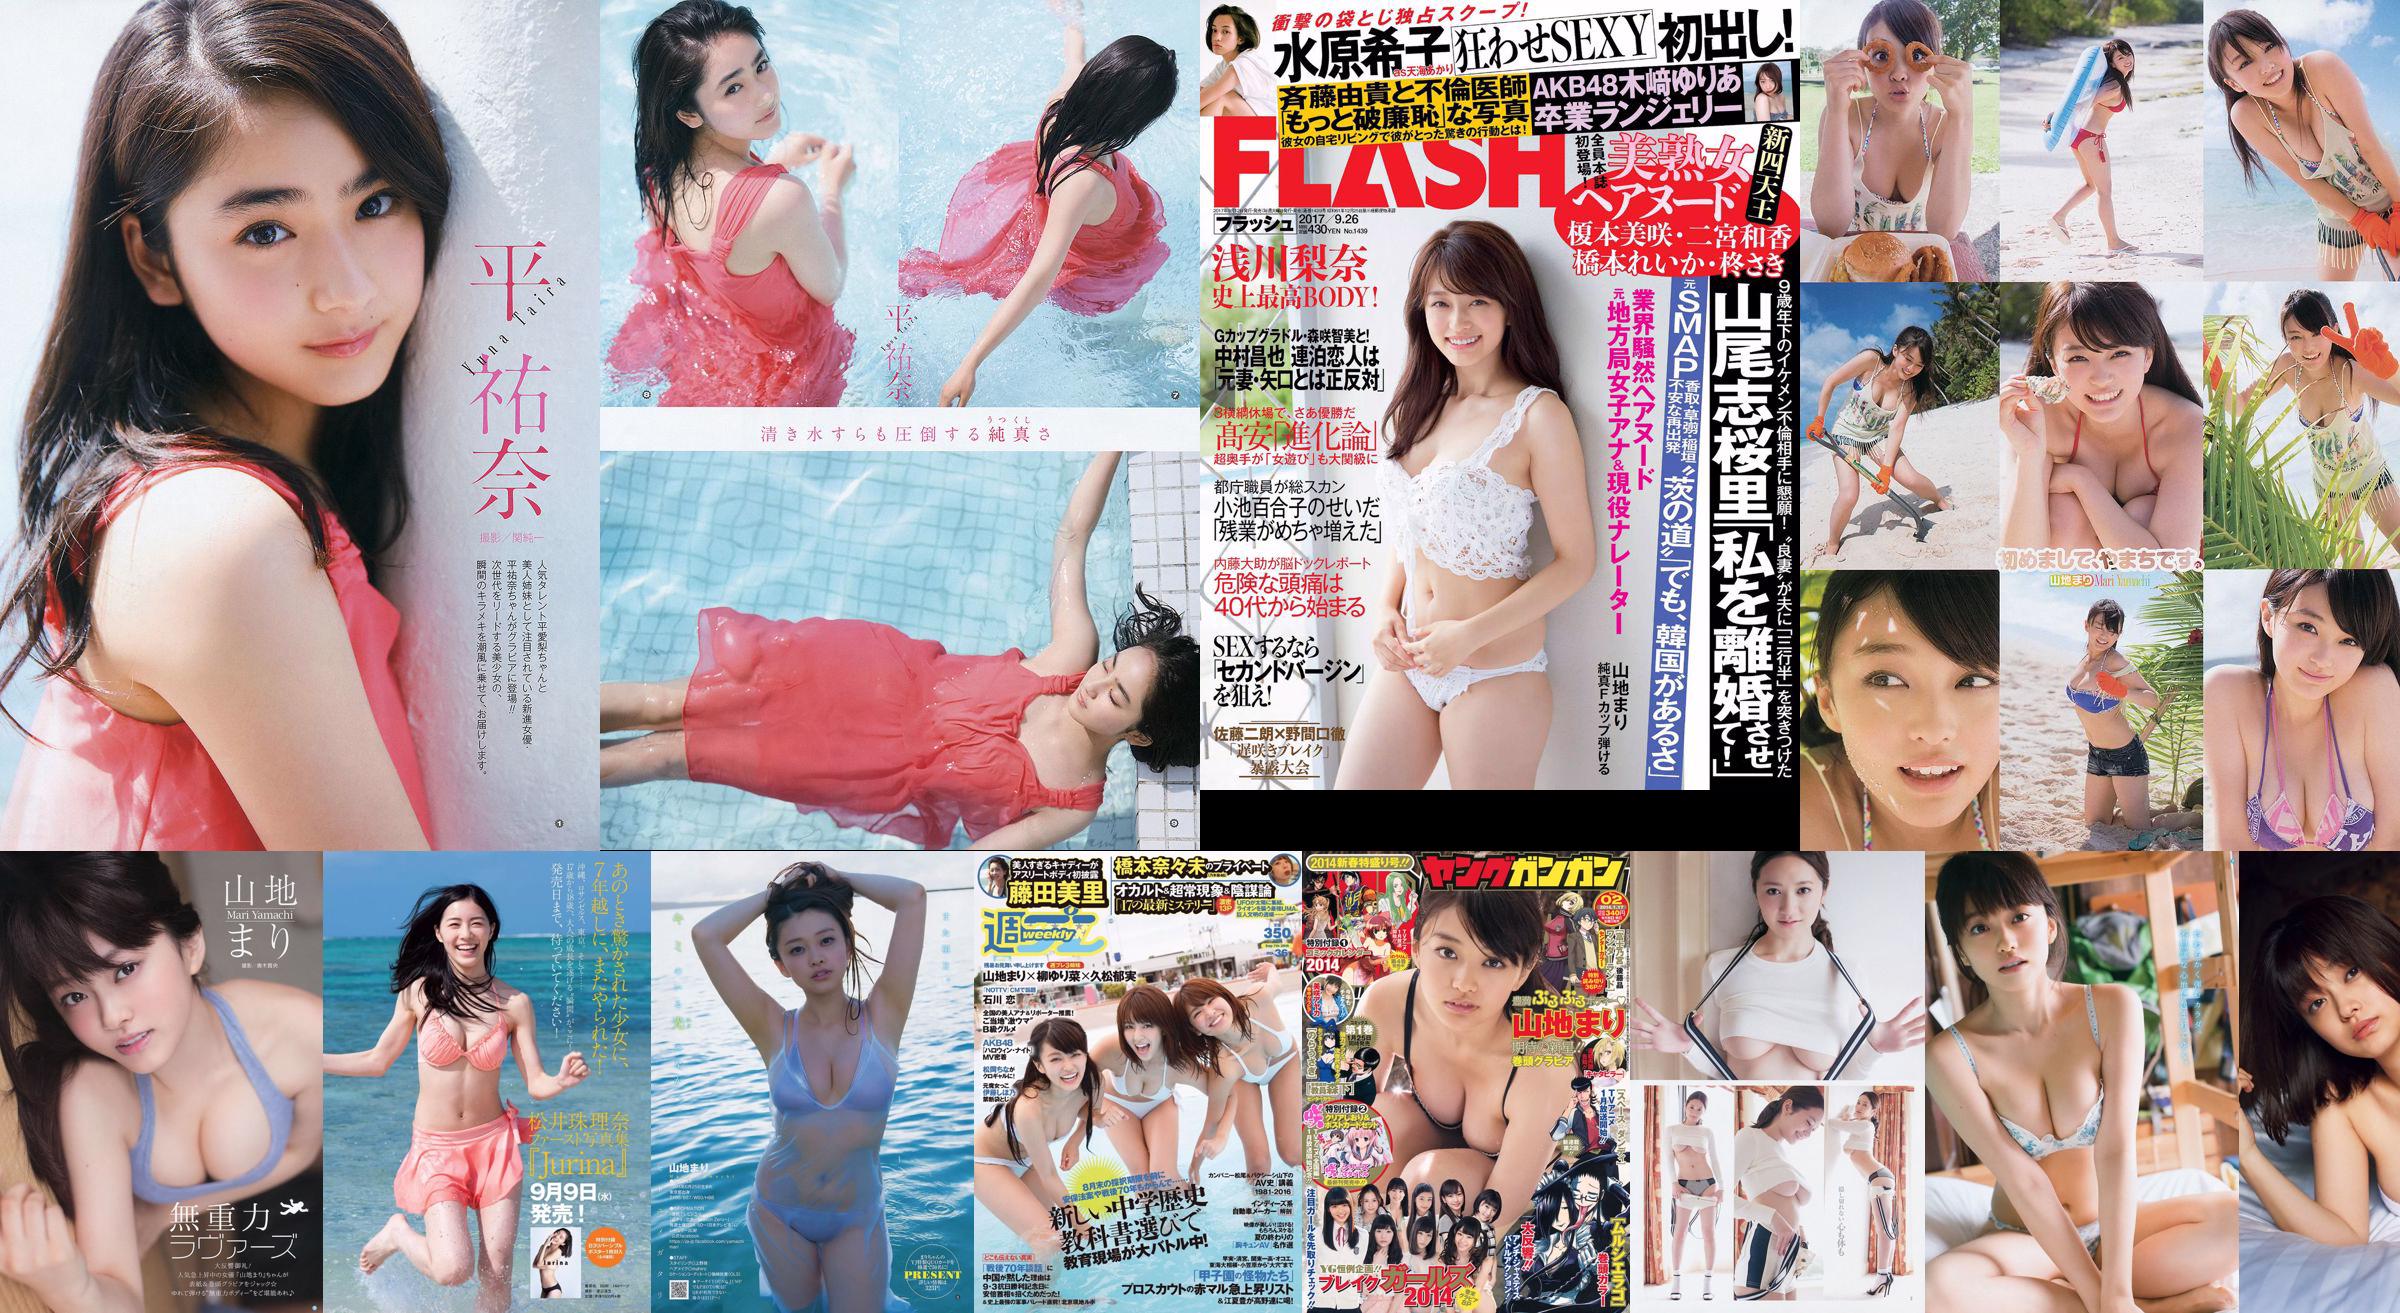 Berg Mari Matsumoto Erika Tang Tian Erika Shionji Misumi Takahashi Walnuss Watanabe Miyuki [Wöchentlicher Playboy] 2016 No.30 Photo Magazine No.75aa87 Seite 1